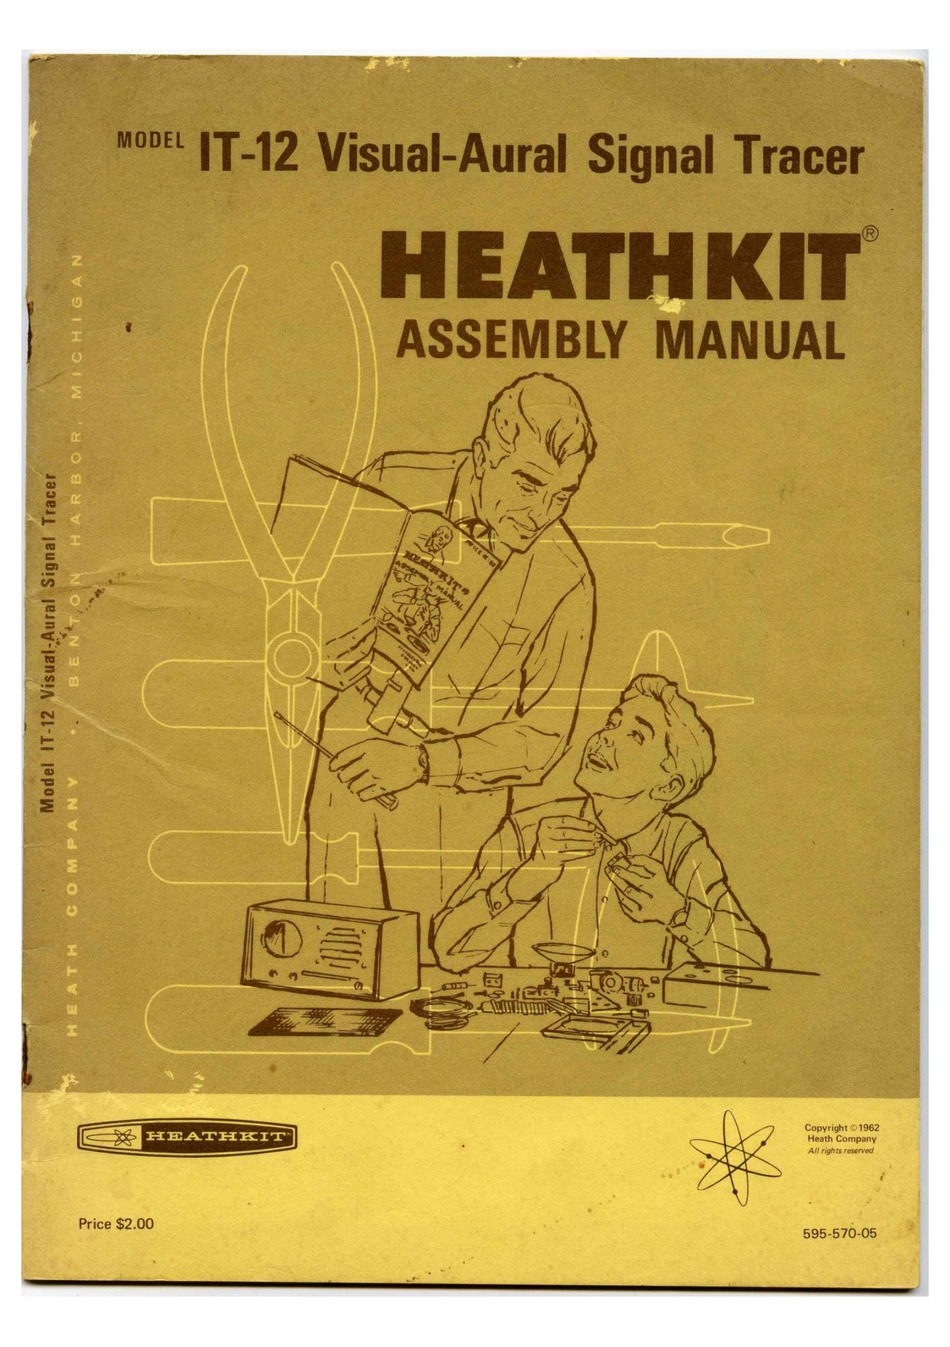 Assembly Manual-Anleitung für Heathkit IT-1121 